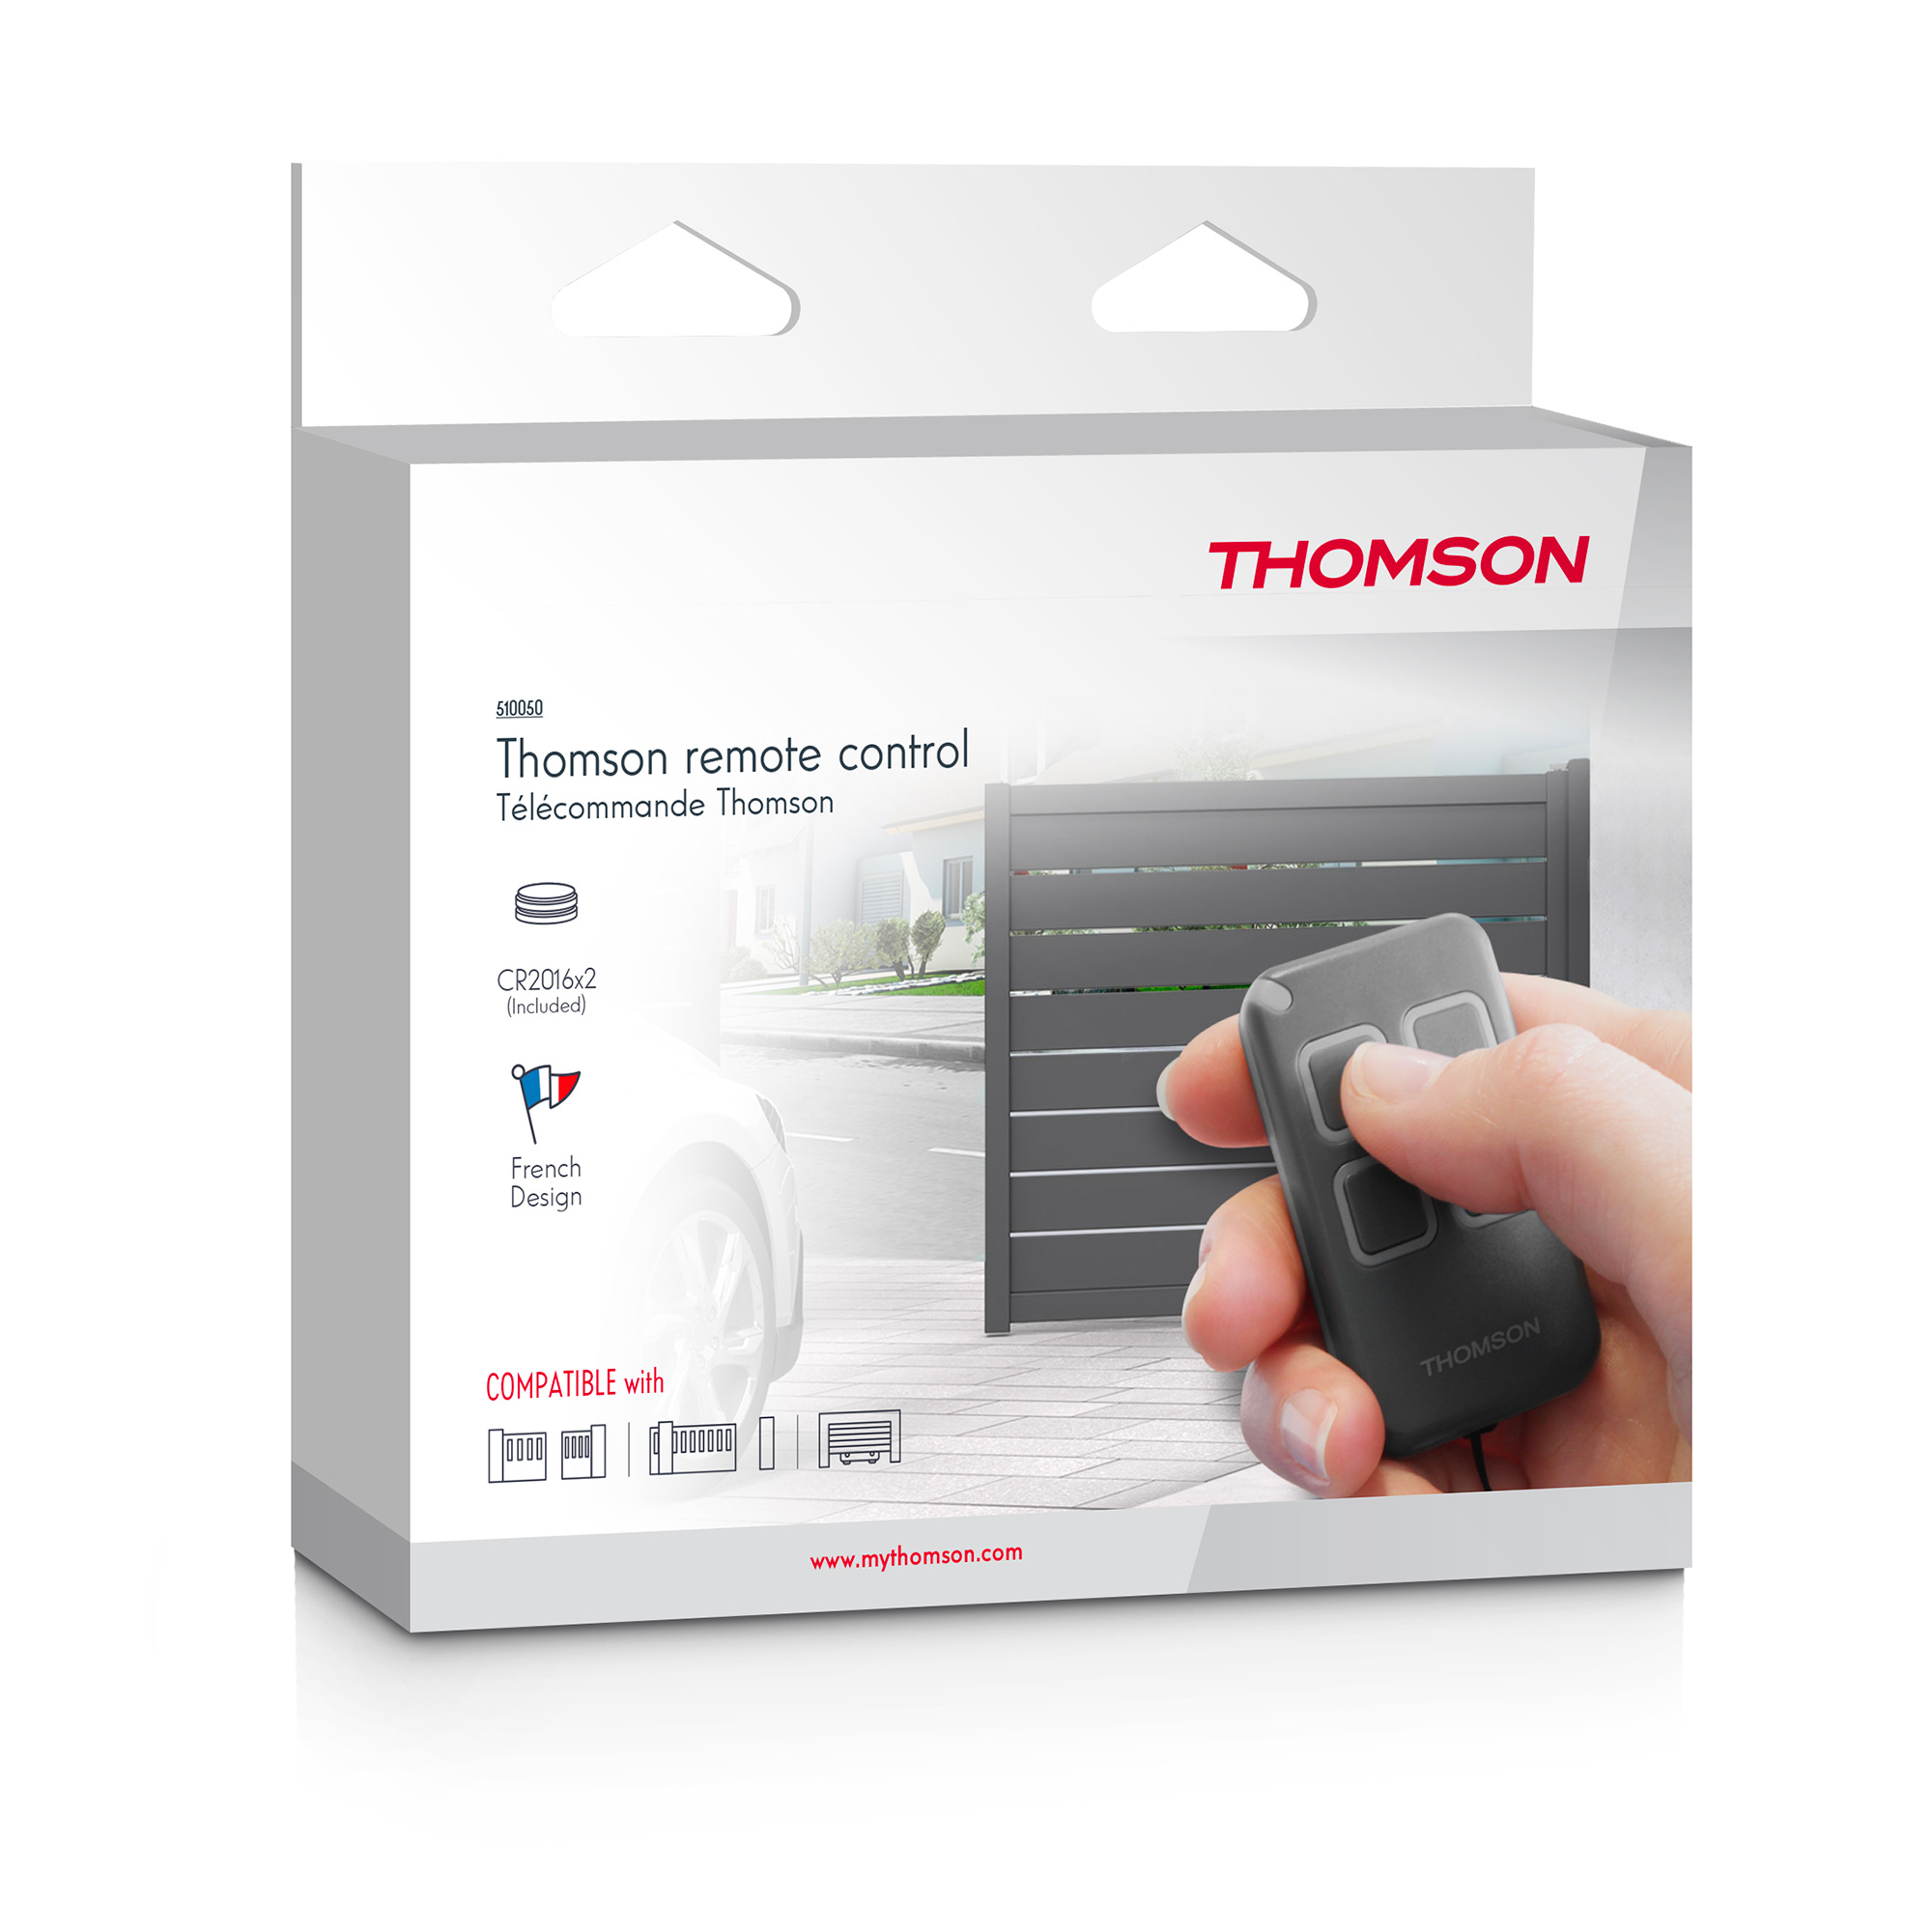 Thomson - Télécommande pour motorisation de portail et porte de